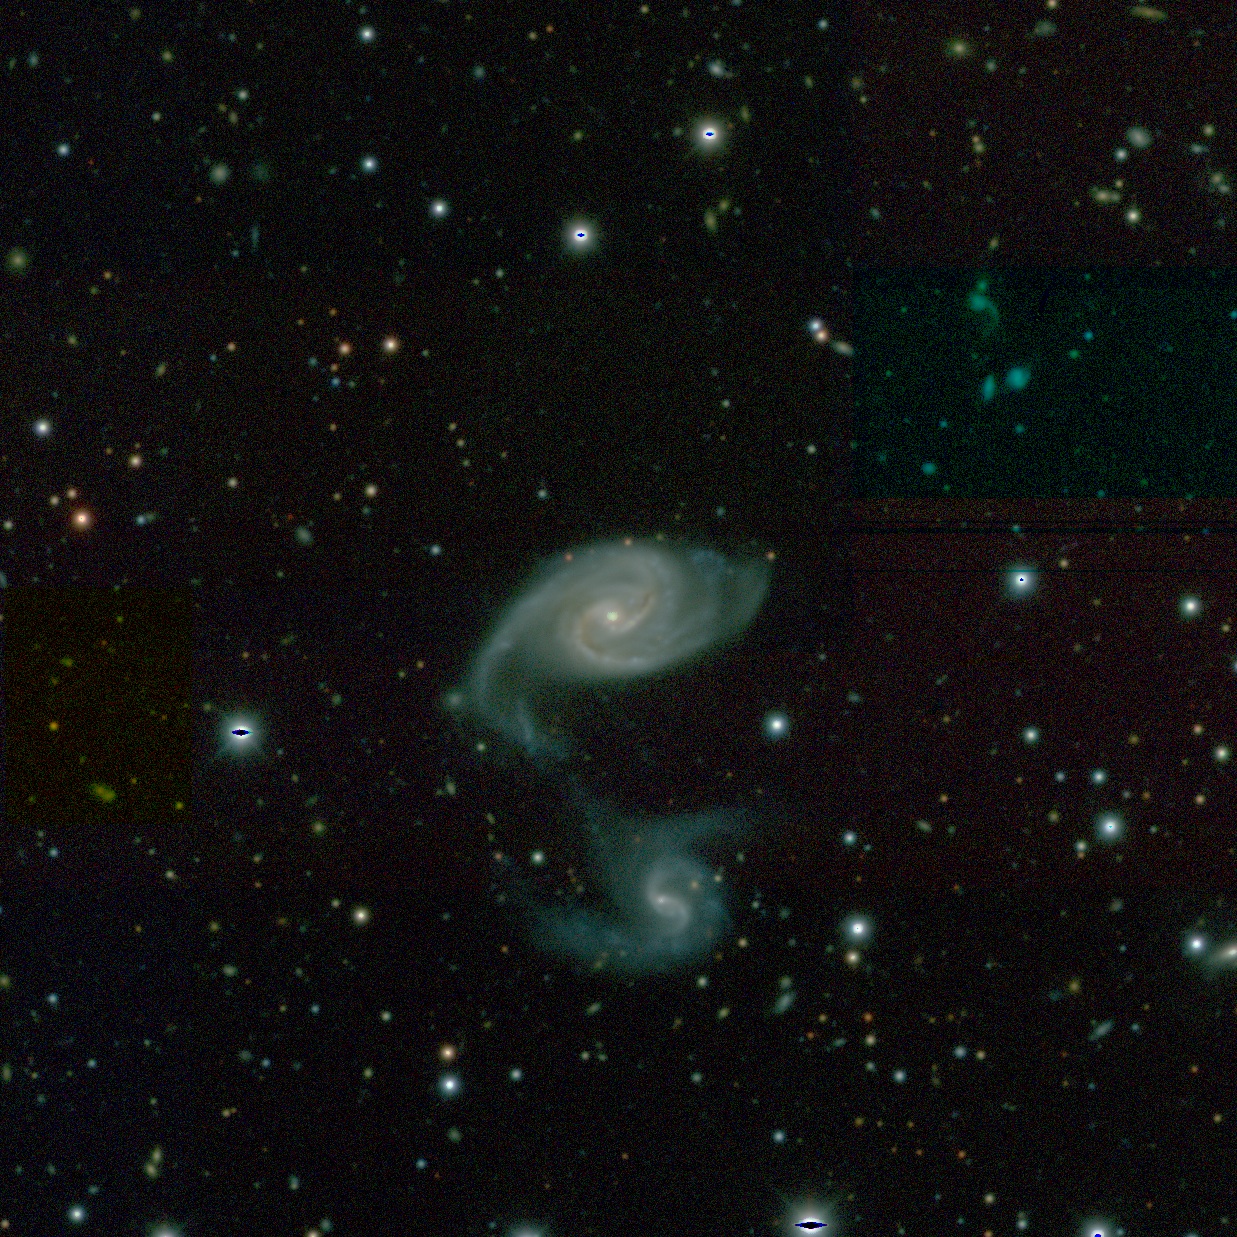 Imagen de DeCAM, la Cámara de Energía Oscura, obtenida con el Telescopio Blanco. Fuente: Sondeo Celeste de Energía Oscura.